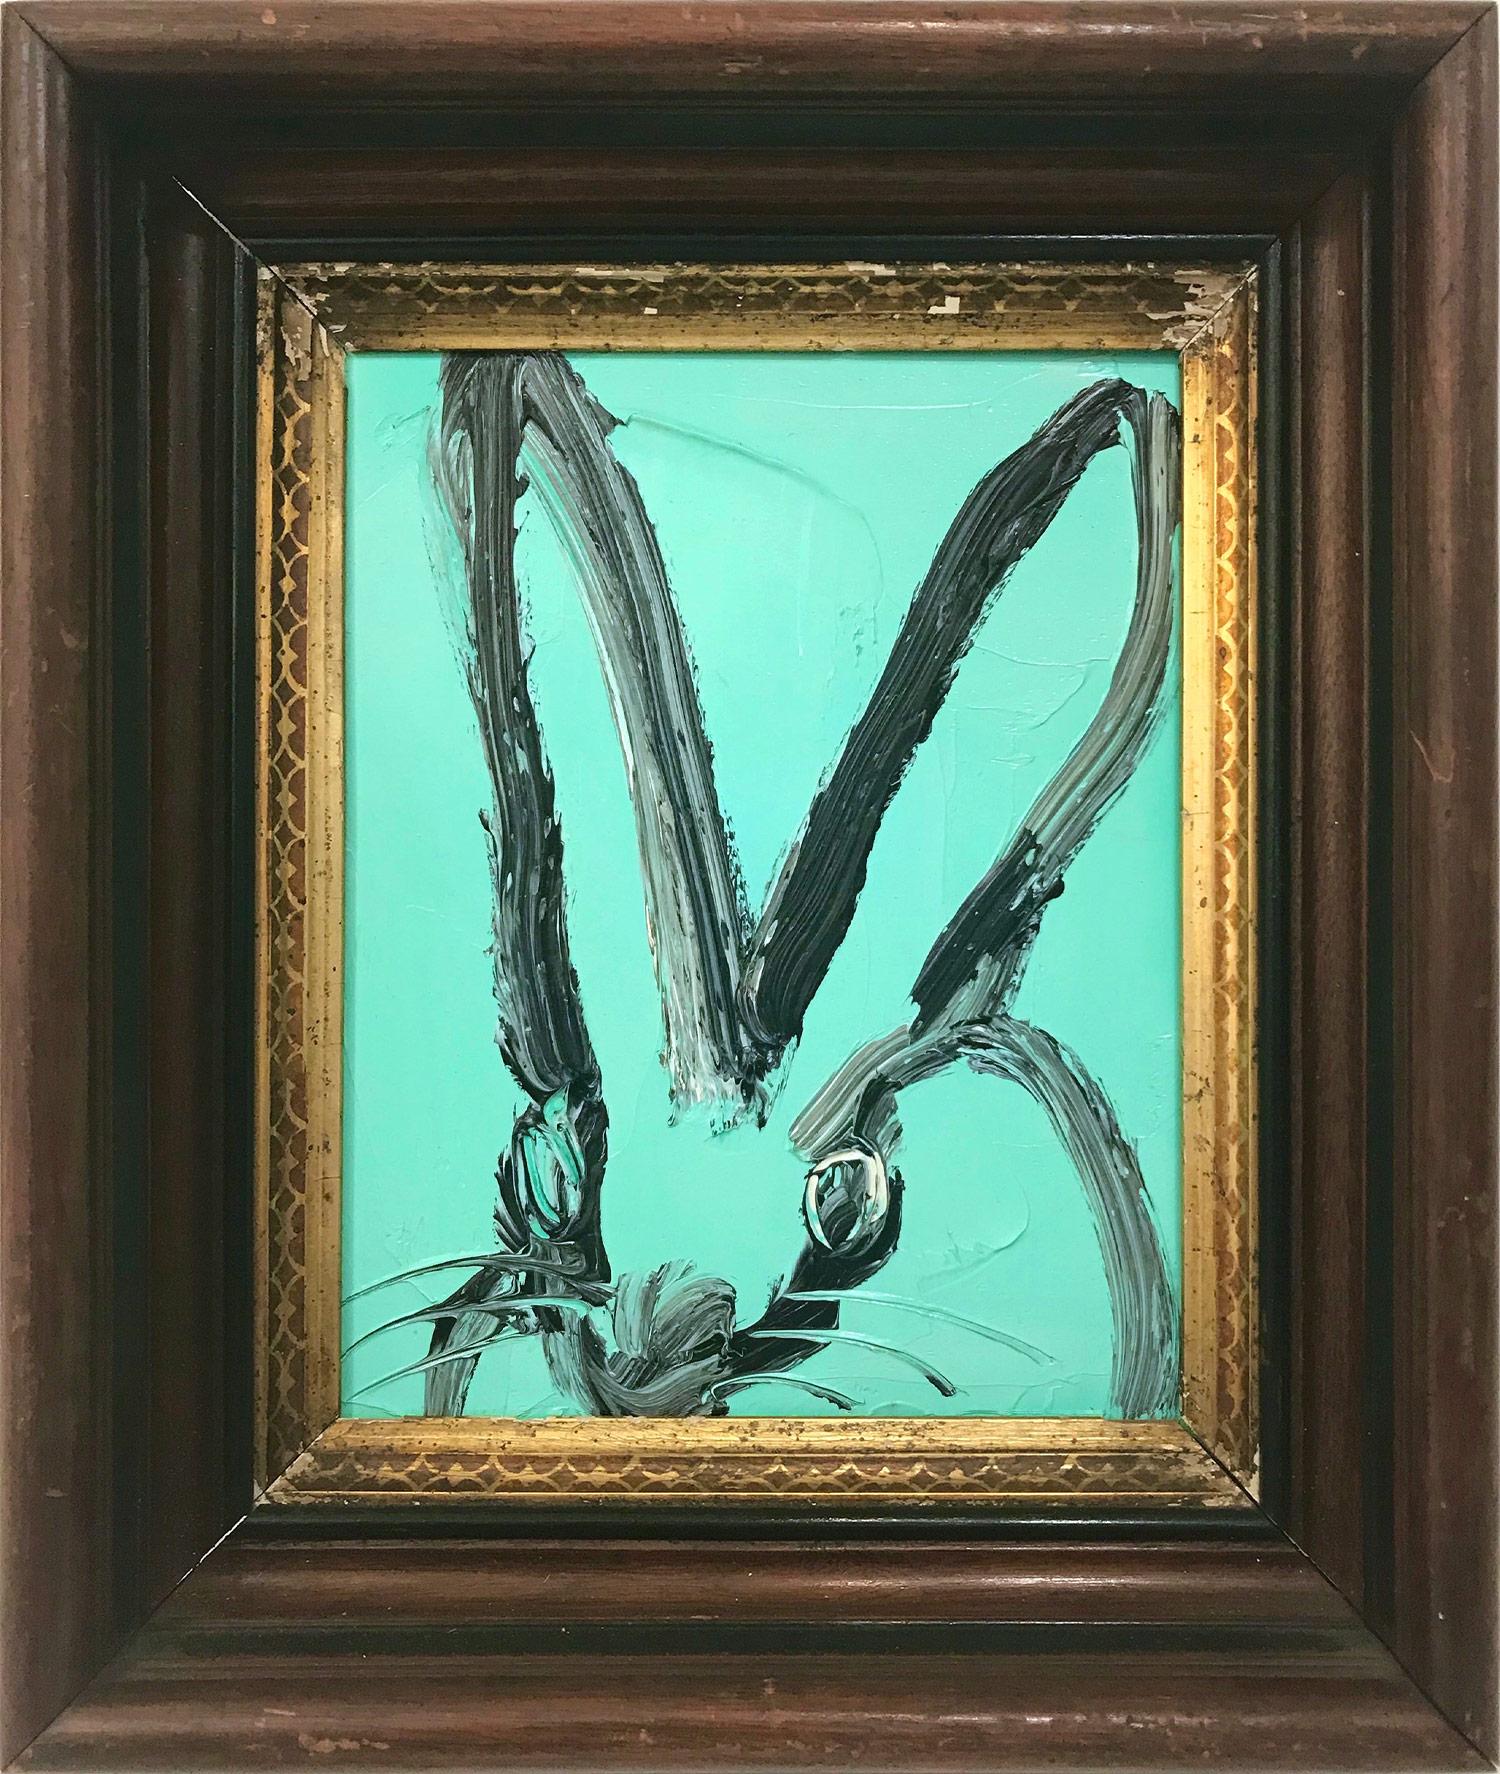 Hunt Slonem Animal Painting - "Untitled" (Bunny on Aqua Blue) Oil Painting on Wood Panel